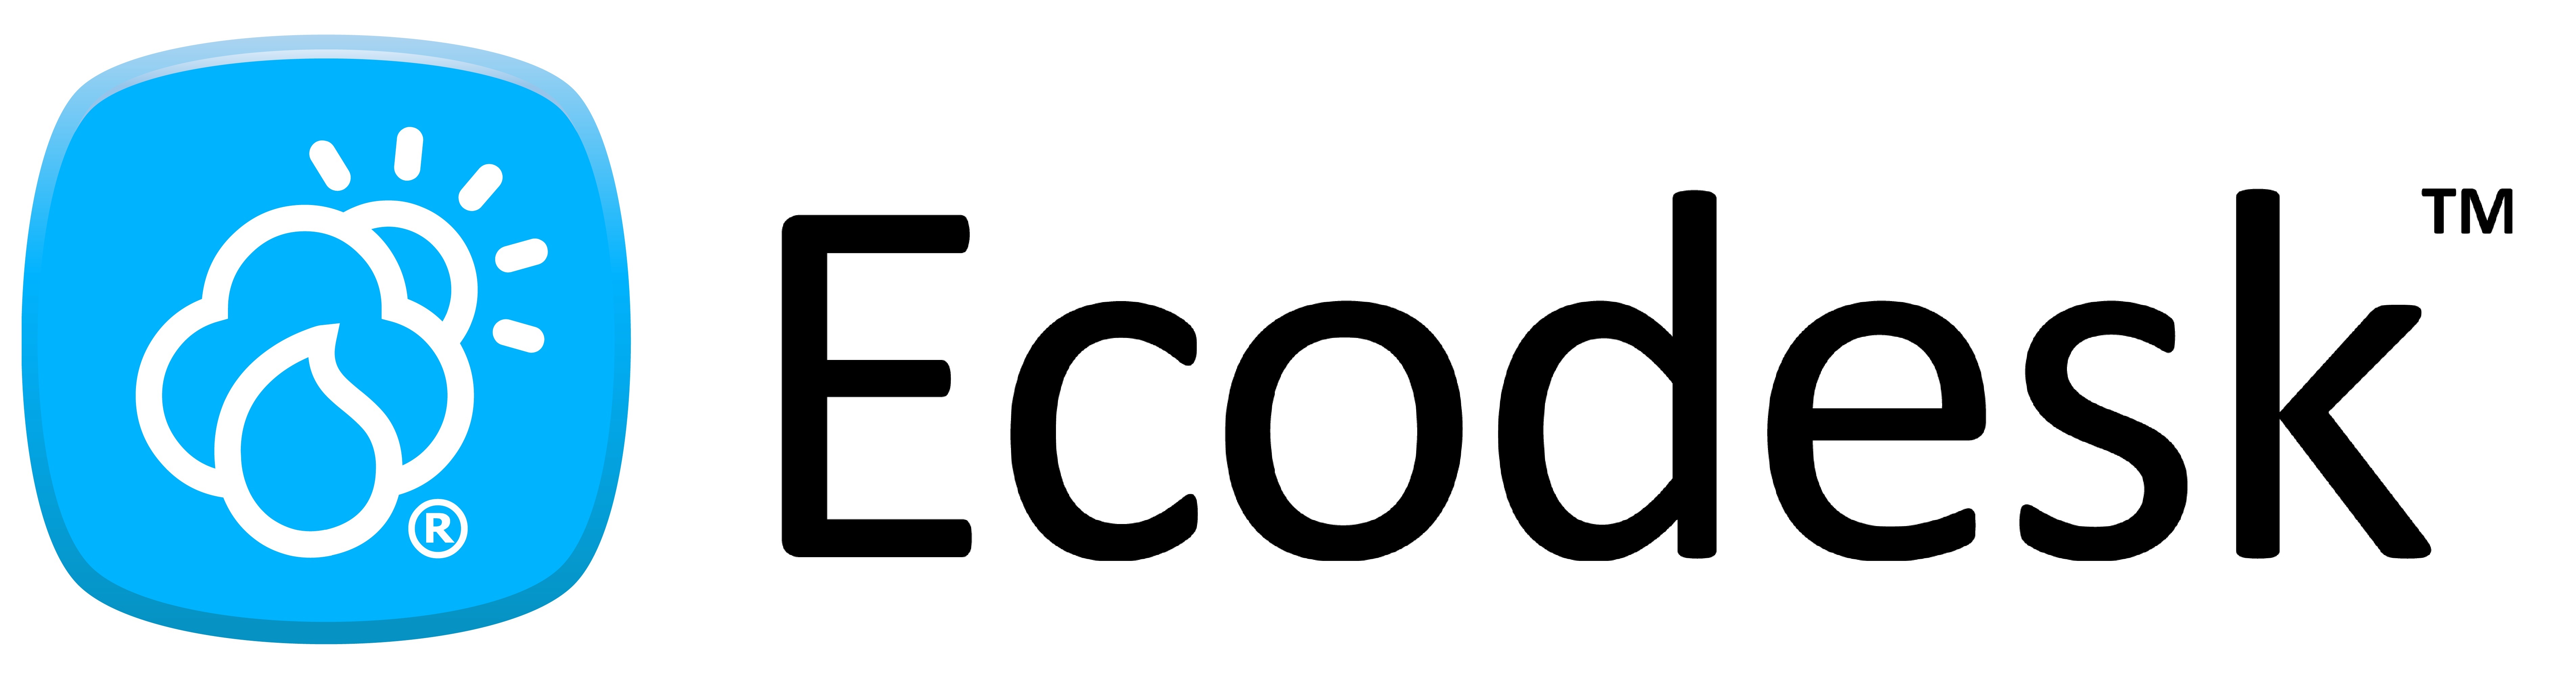 Ecodesk logo